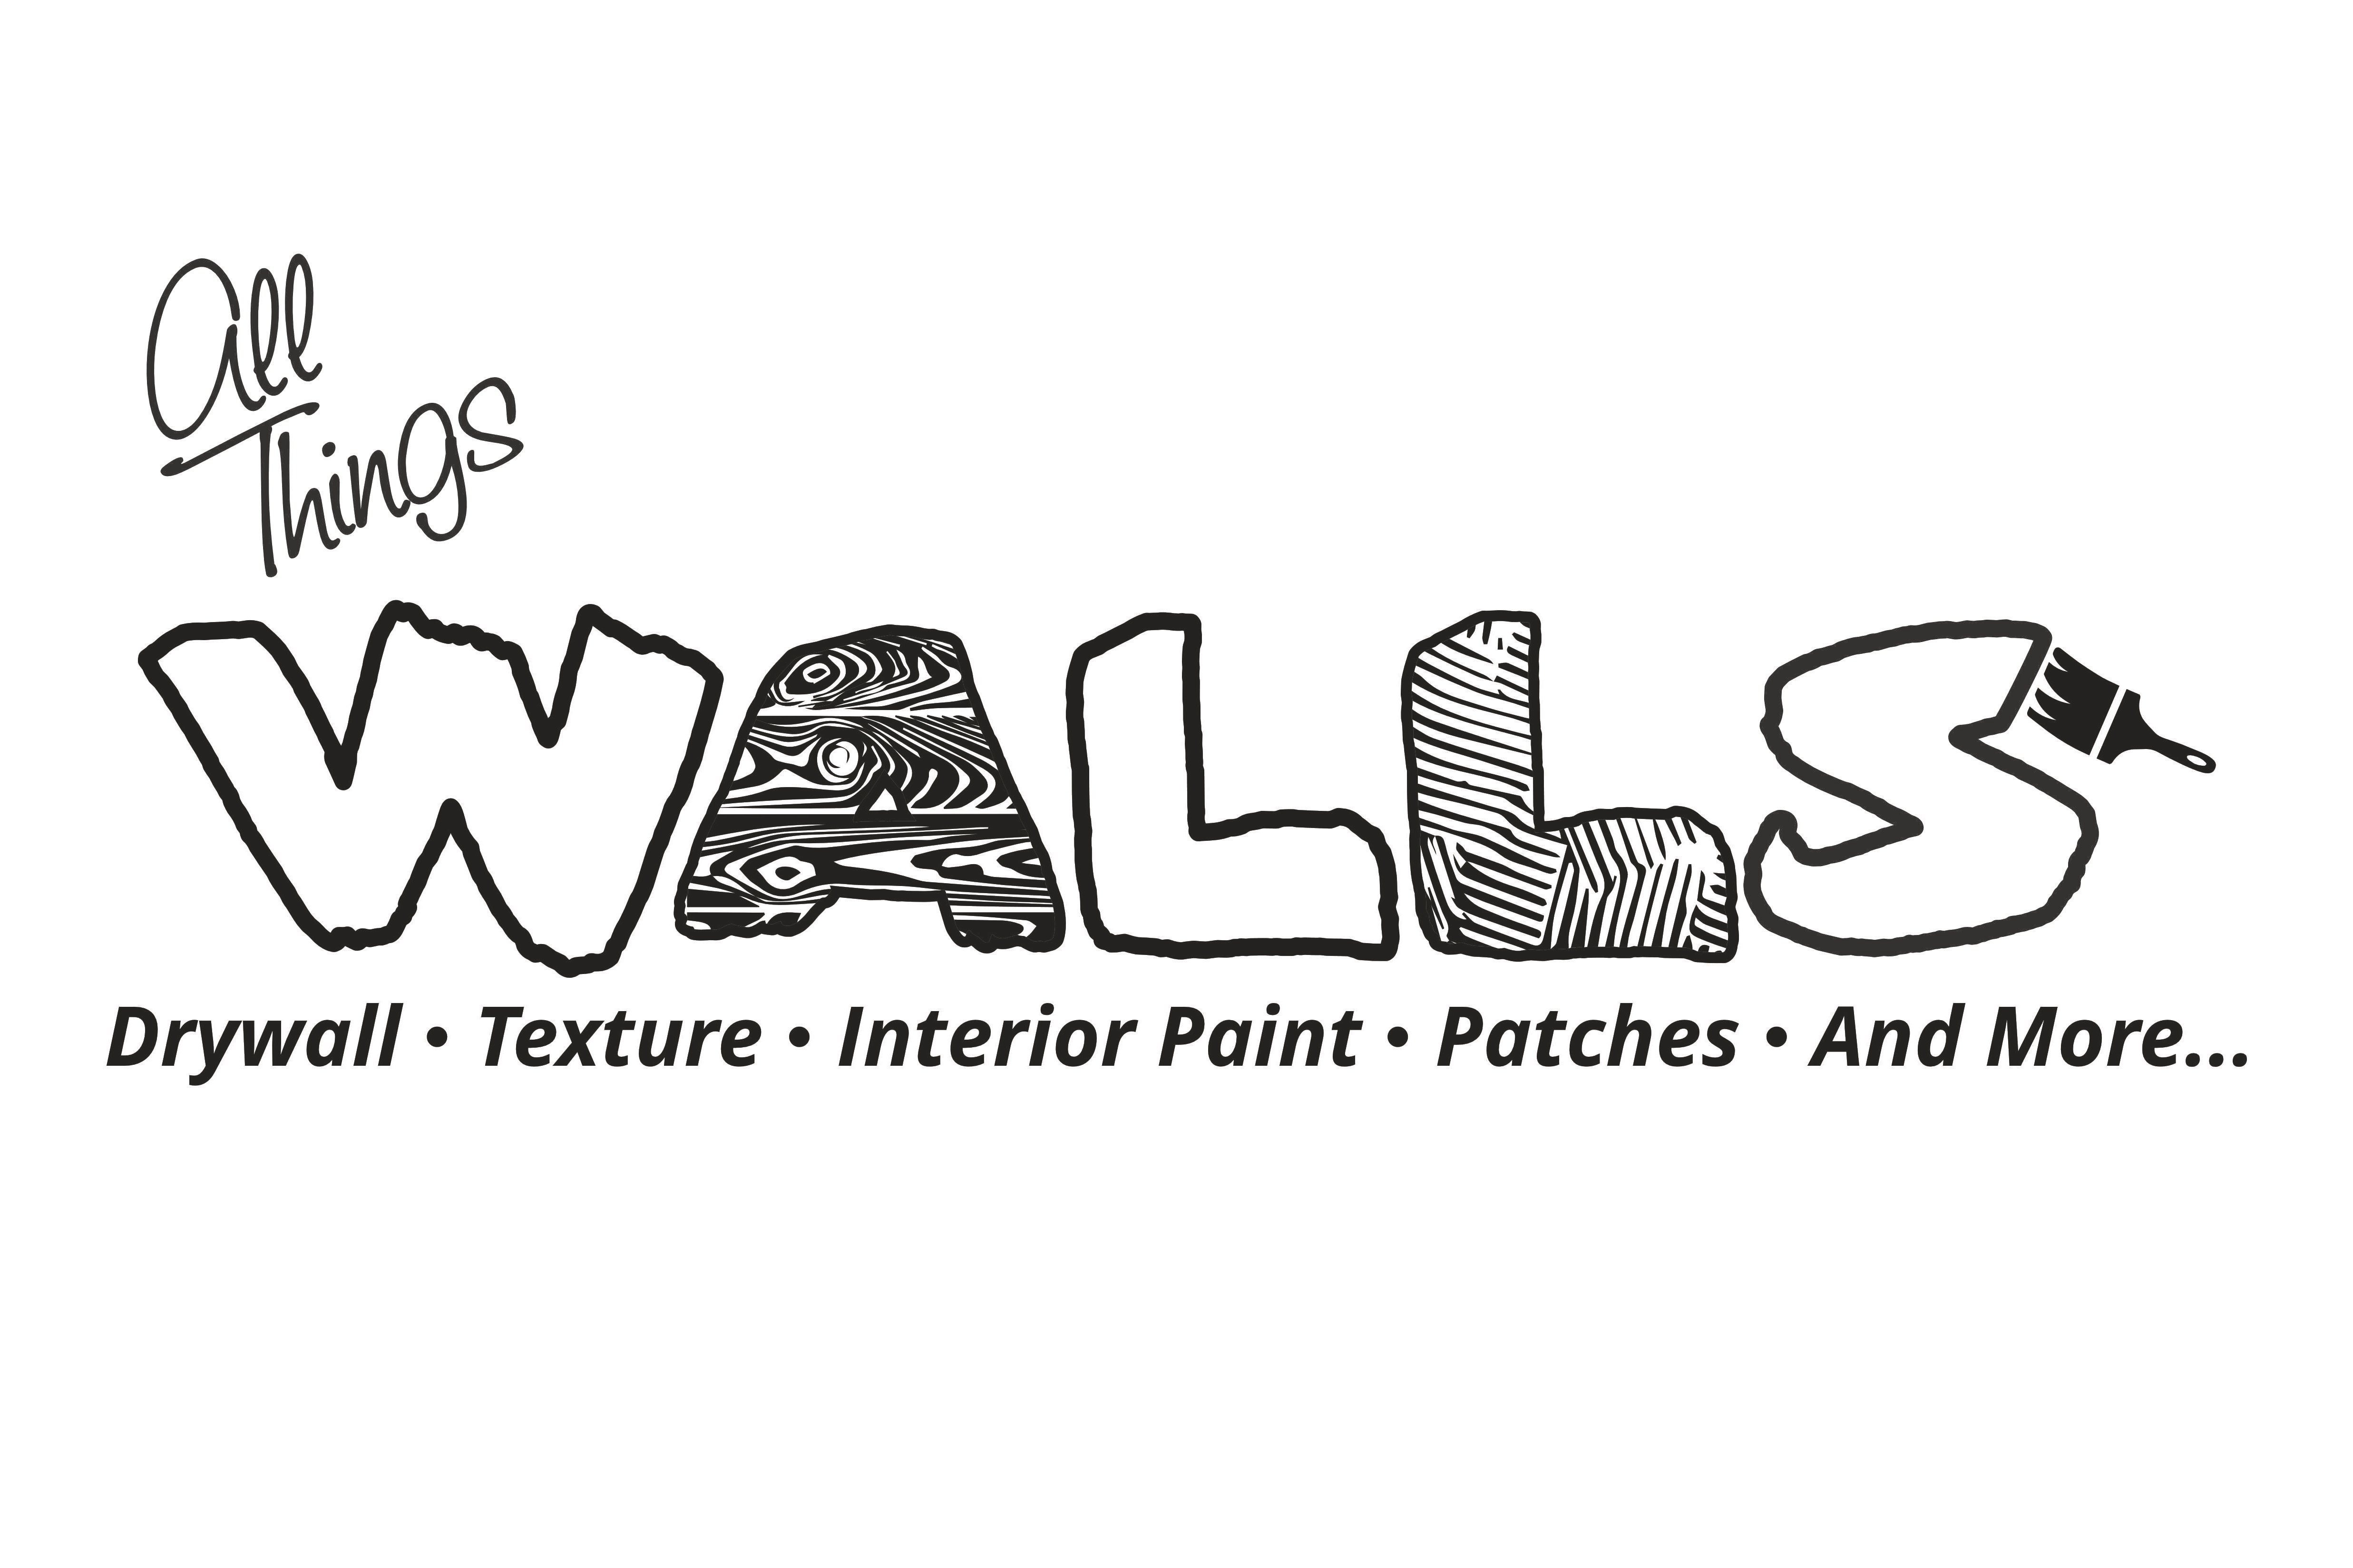 All Things Walls Logo